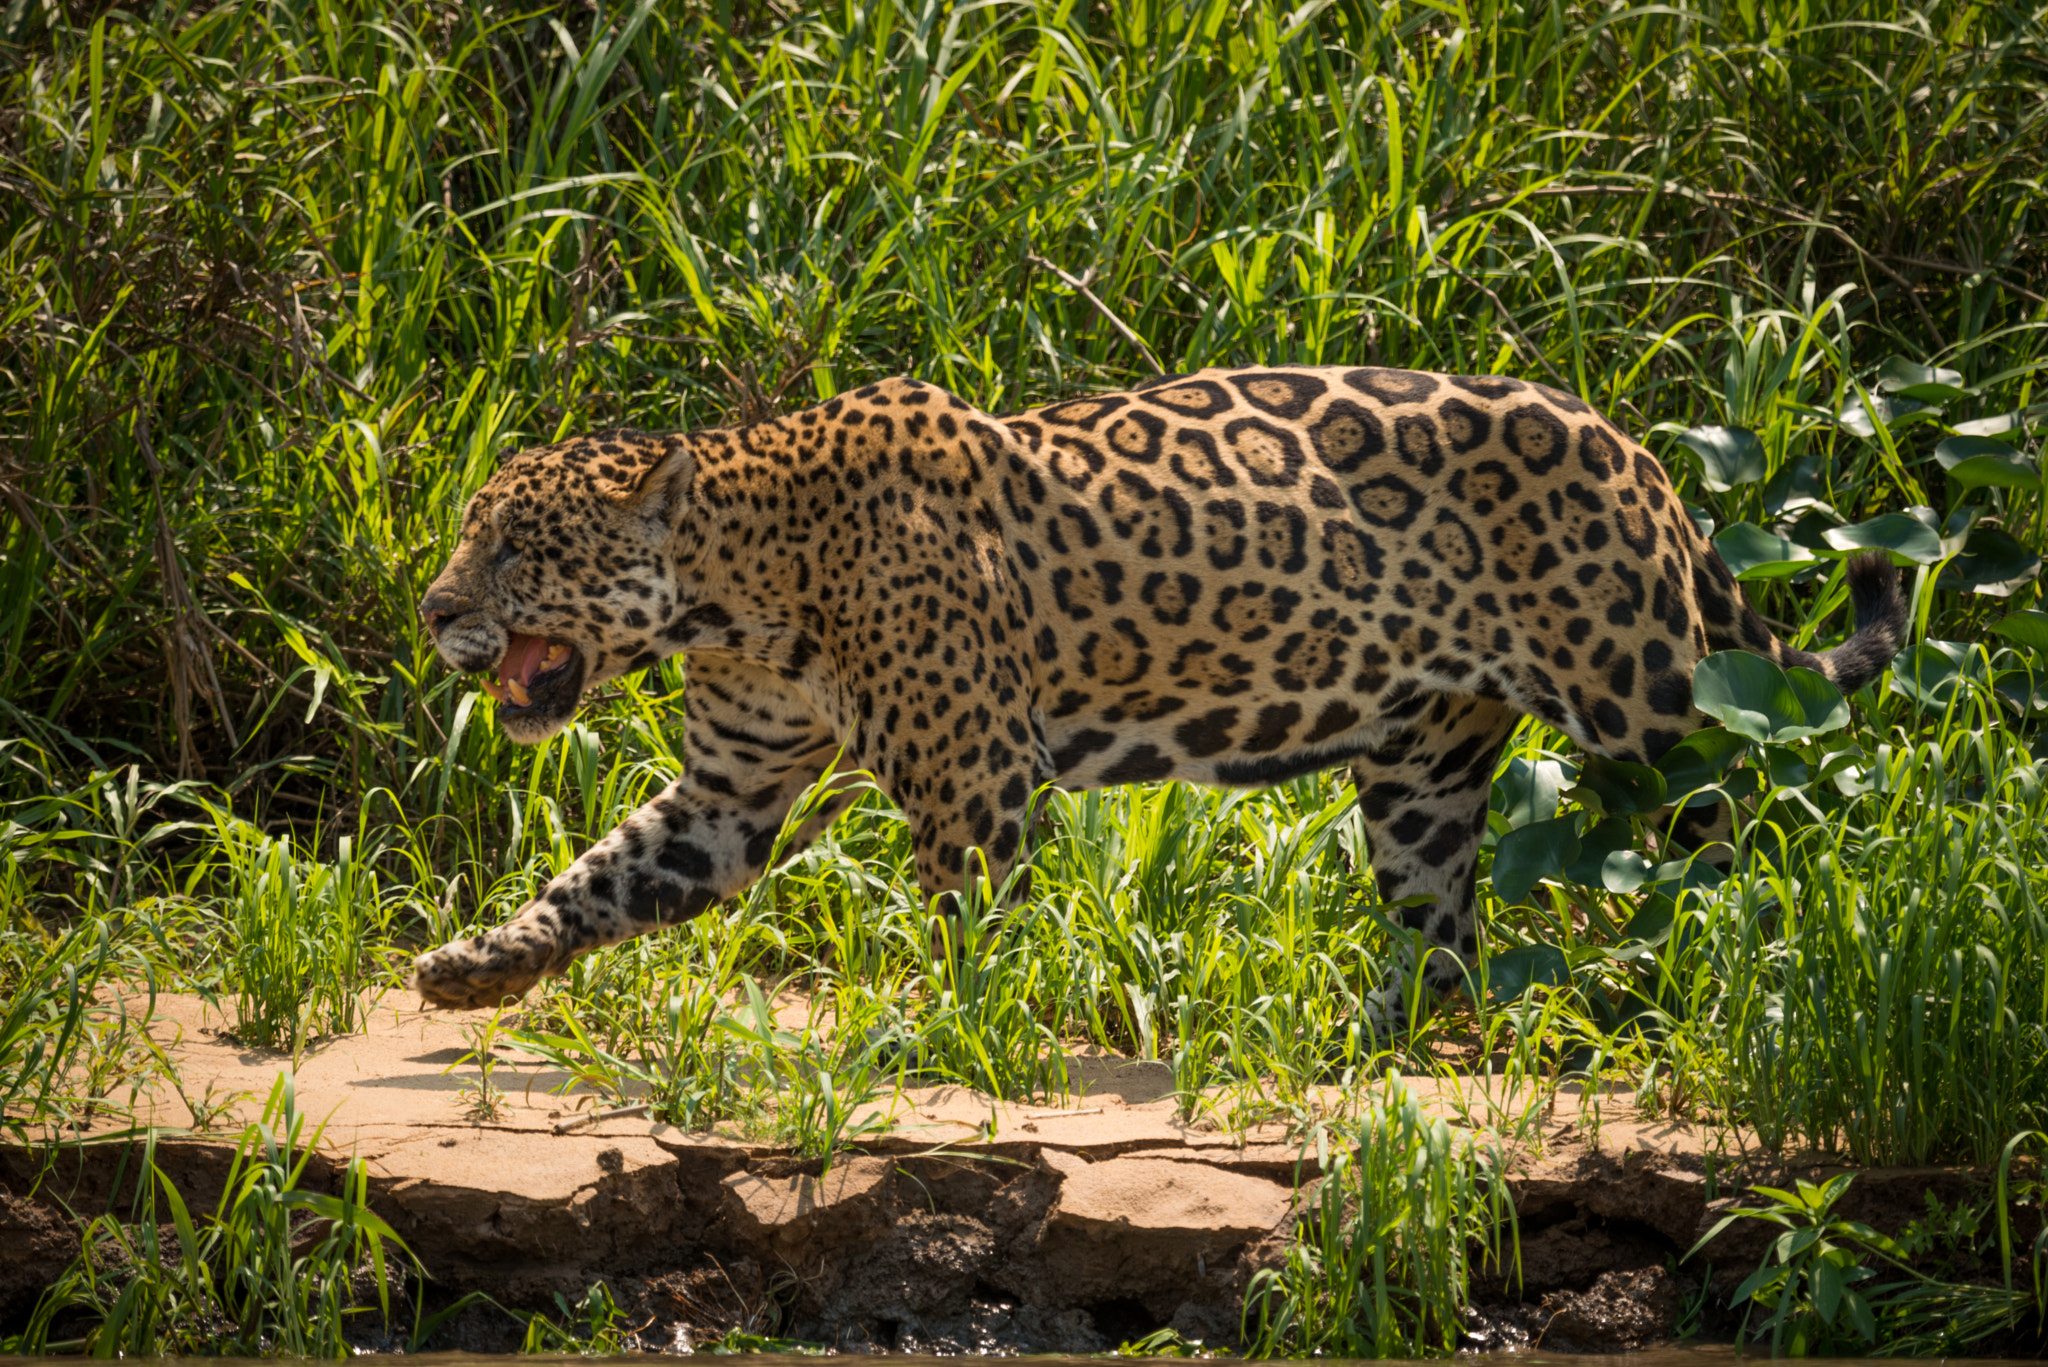 Nikon D800 sample photo. Jaguar walking through grass along river bank photography